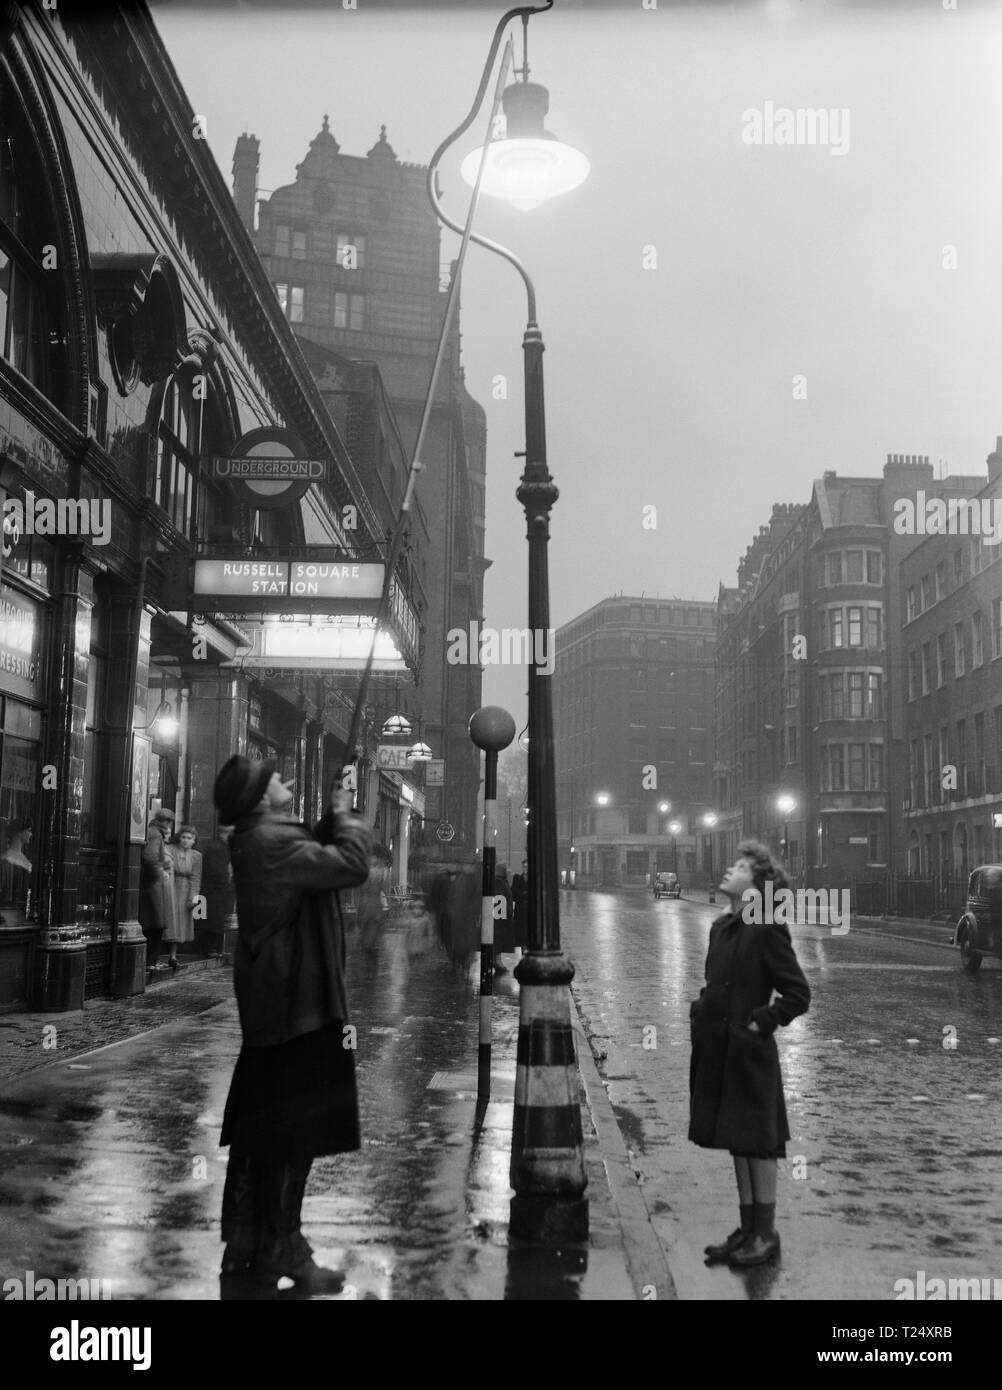 Photographie en noir et blanc prises en 1950 à l'extérieur de la station de métro Russell Square à Londres, en Angleterre. Il montre un homme d'un gaz d'éclairage Lampe de rue, vu par une jeune fille. Banque D'Images